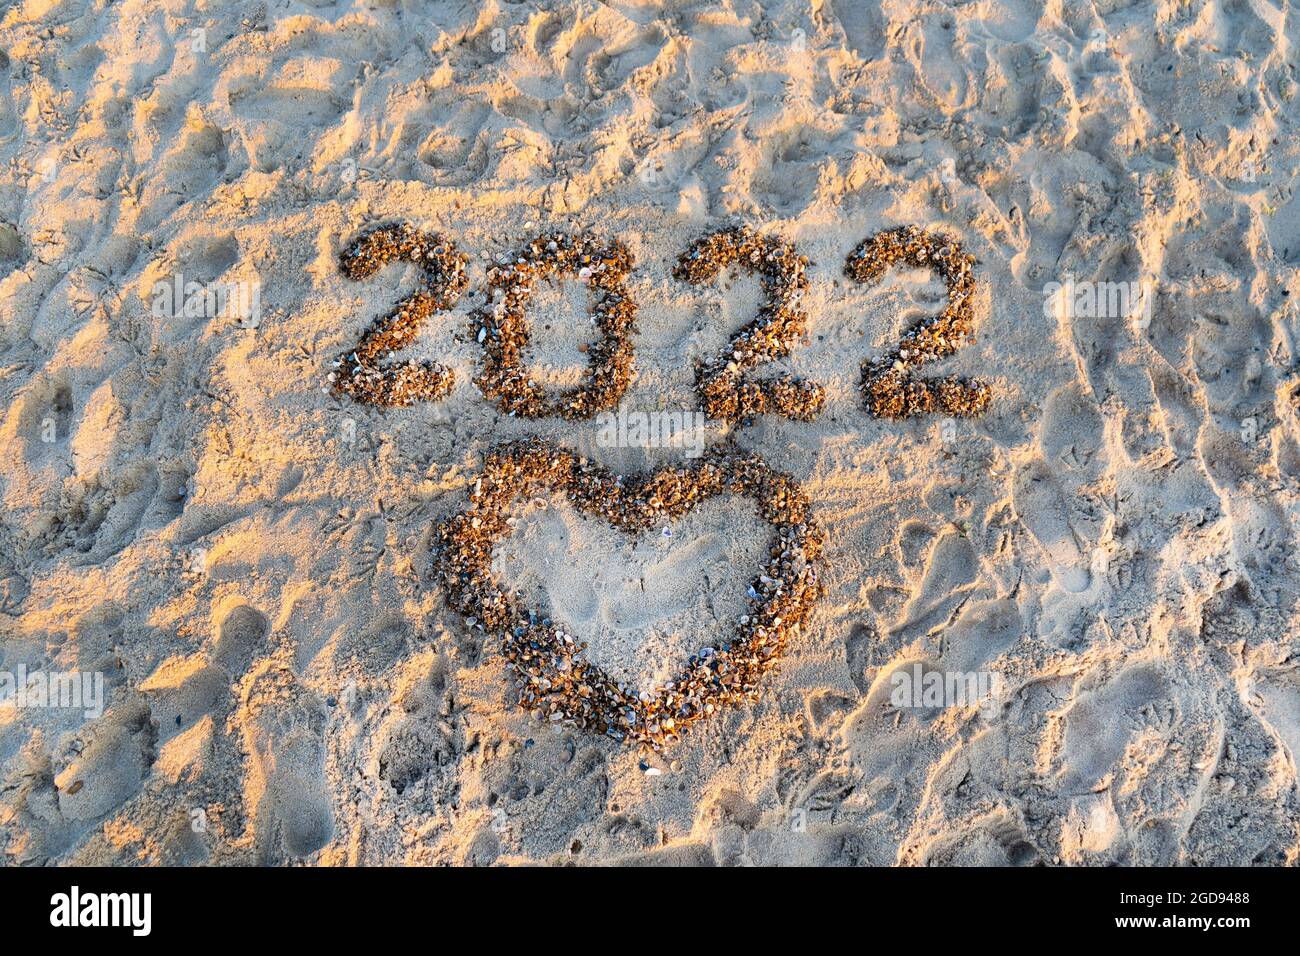 Die Nummern 2022 liegen an einem sandigen Strand mit Muschelschale ...